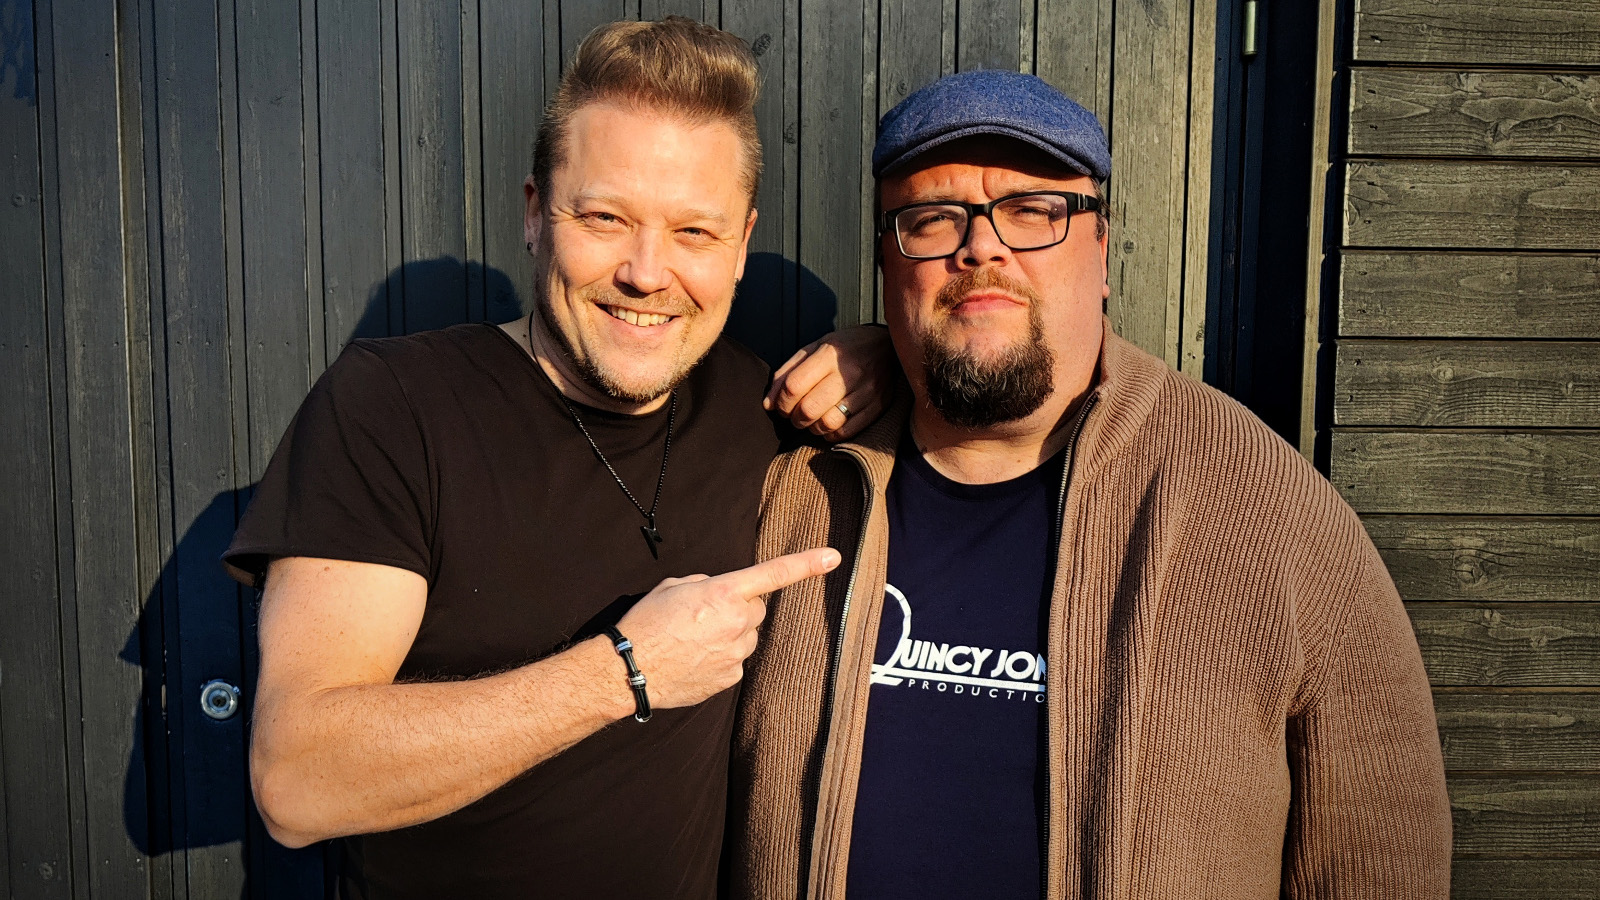 Kuvassa ovat Tomi Salesvuo  mustassa t-paidassa vasemmalla ja Sami Pitkämö pusakassa oikealla seisomassa ulkona.  Kuva on puolivartalokuva. 